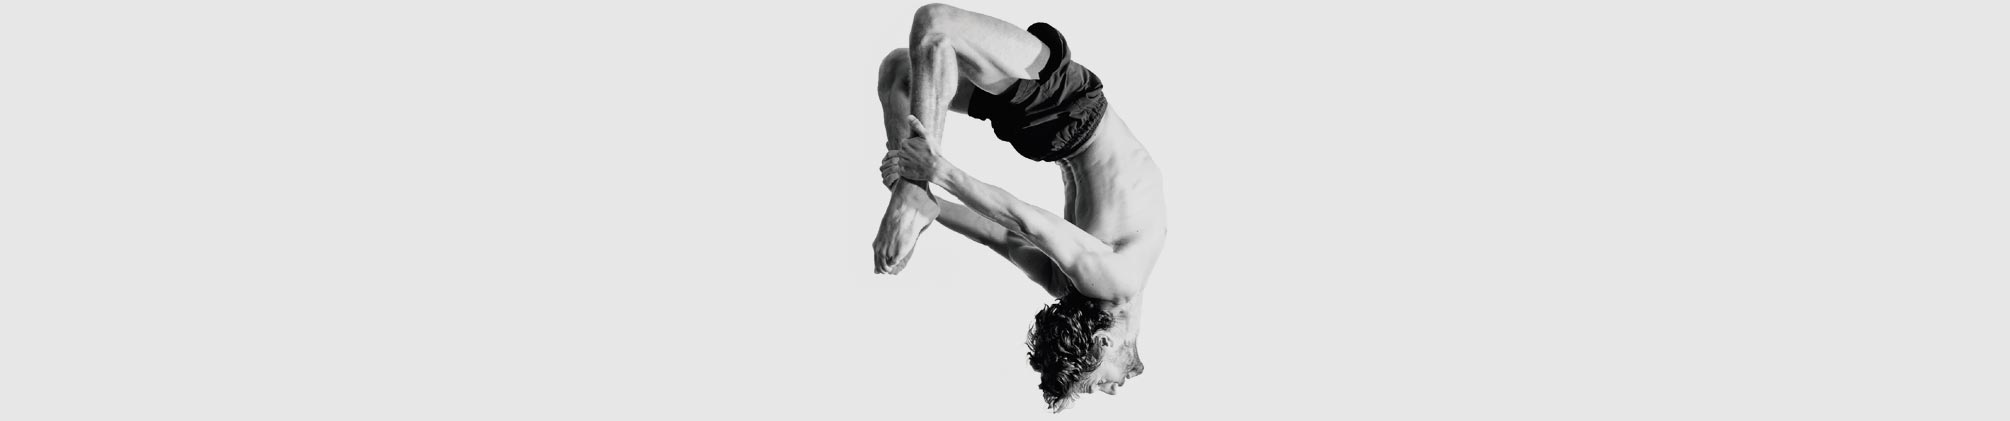 Clases y cursos de acrobacia en Zaragoza - Bailarán